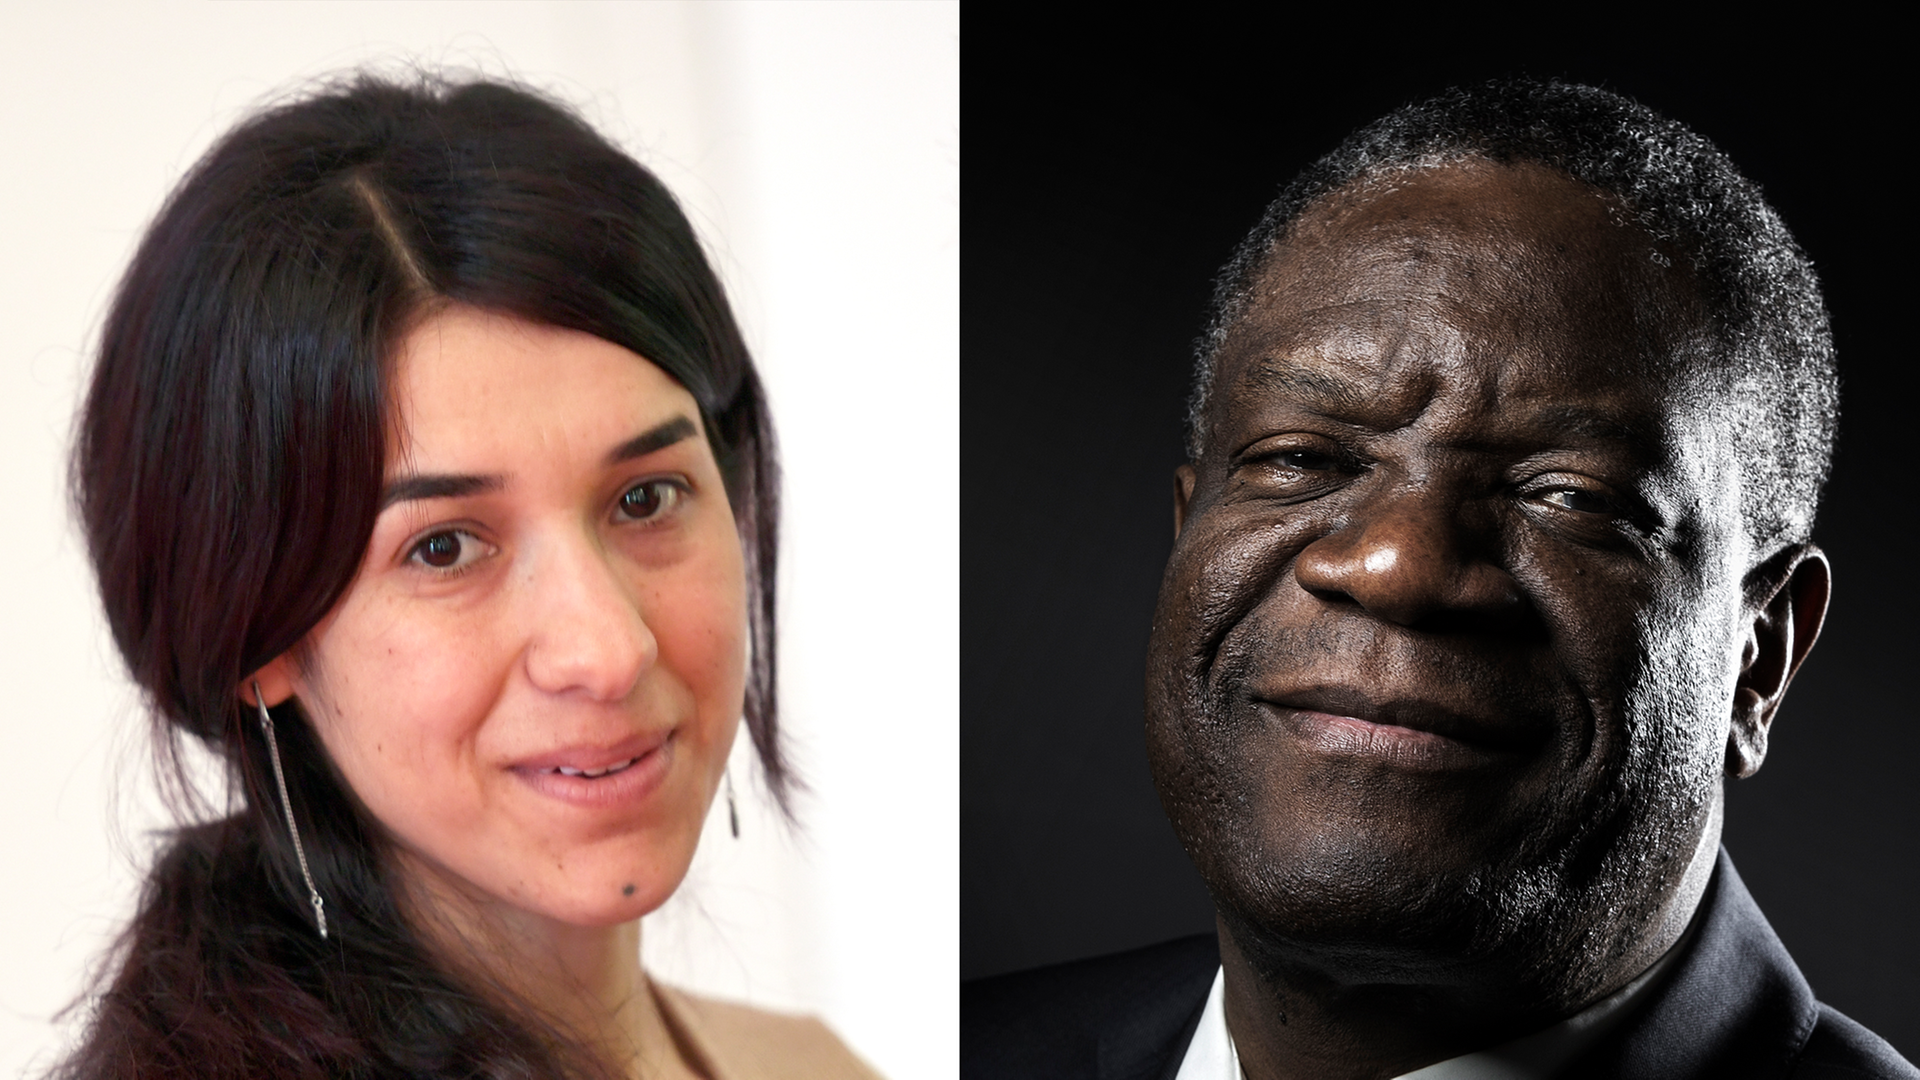 Die Fotomontage zeigt Nadia Murad aus dem Land Irak und Denis Mukwege, einen Arzt aus dem Land Kongo. Die beiden bekommen den Nobel-Preis für Frieden.